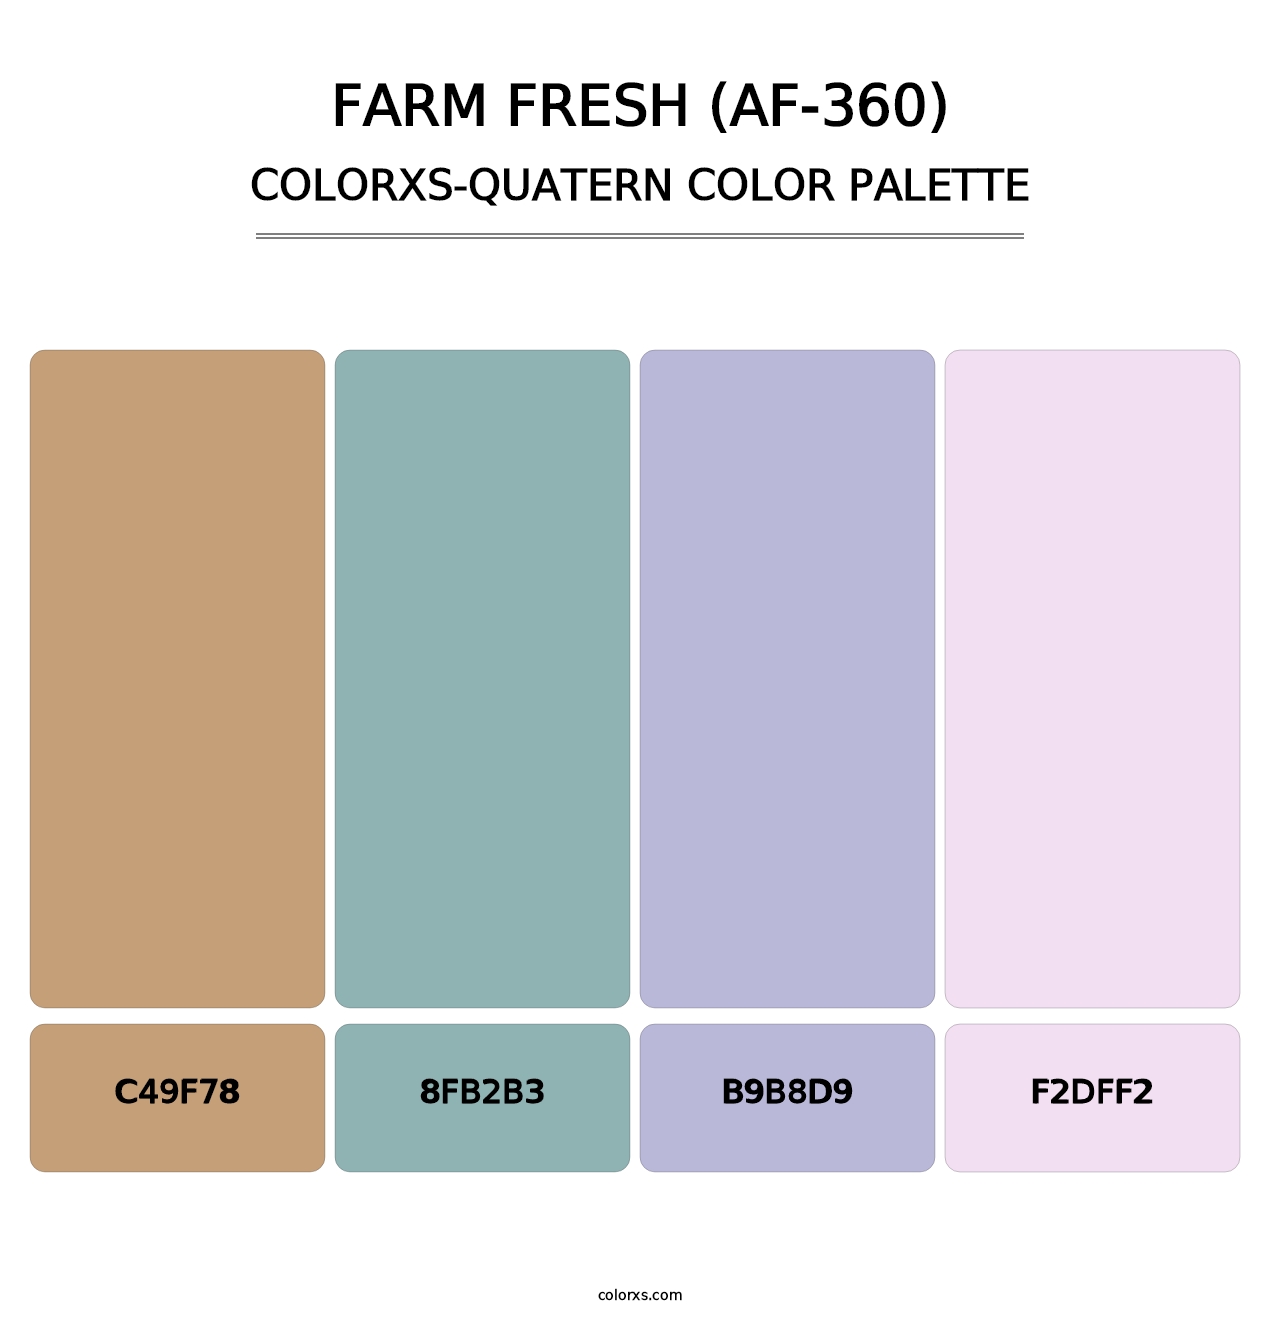 Farm Fresh (AF-360) - Colorxs Quatern Palette